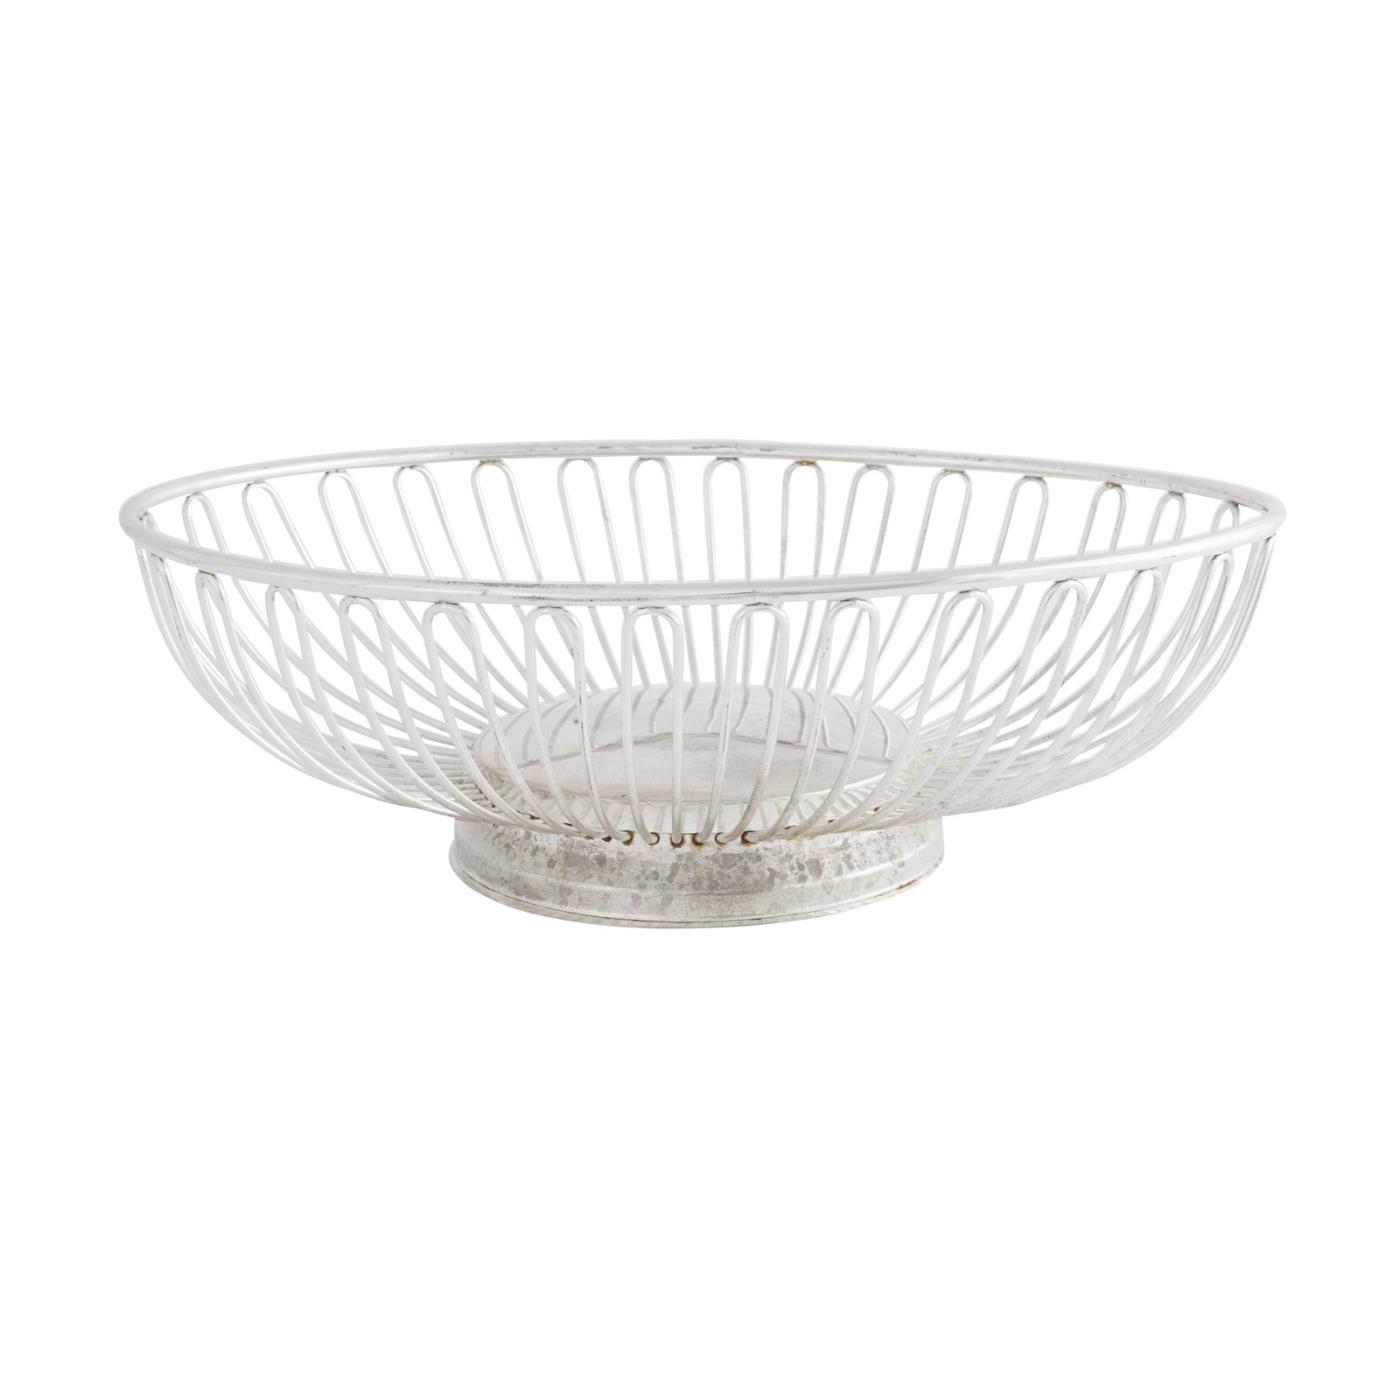 Silver Bread Basket - Silver Oval